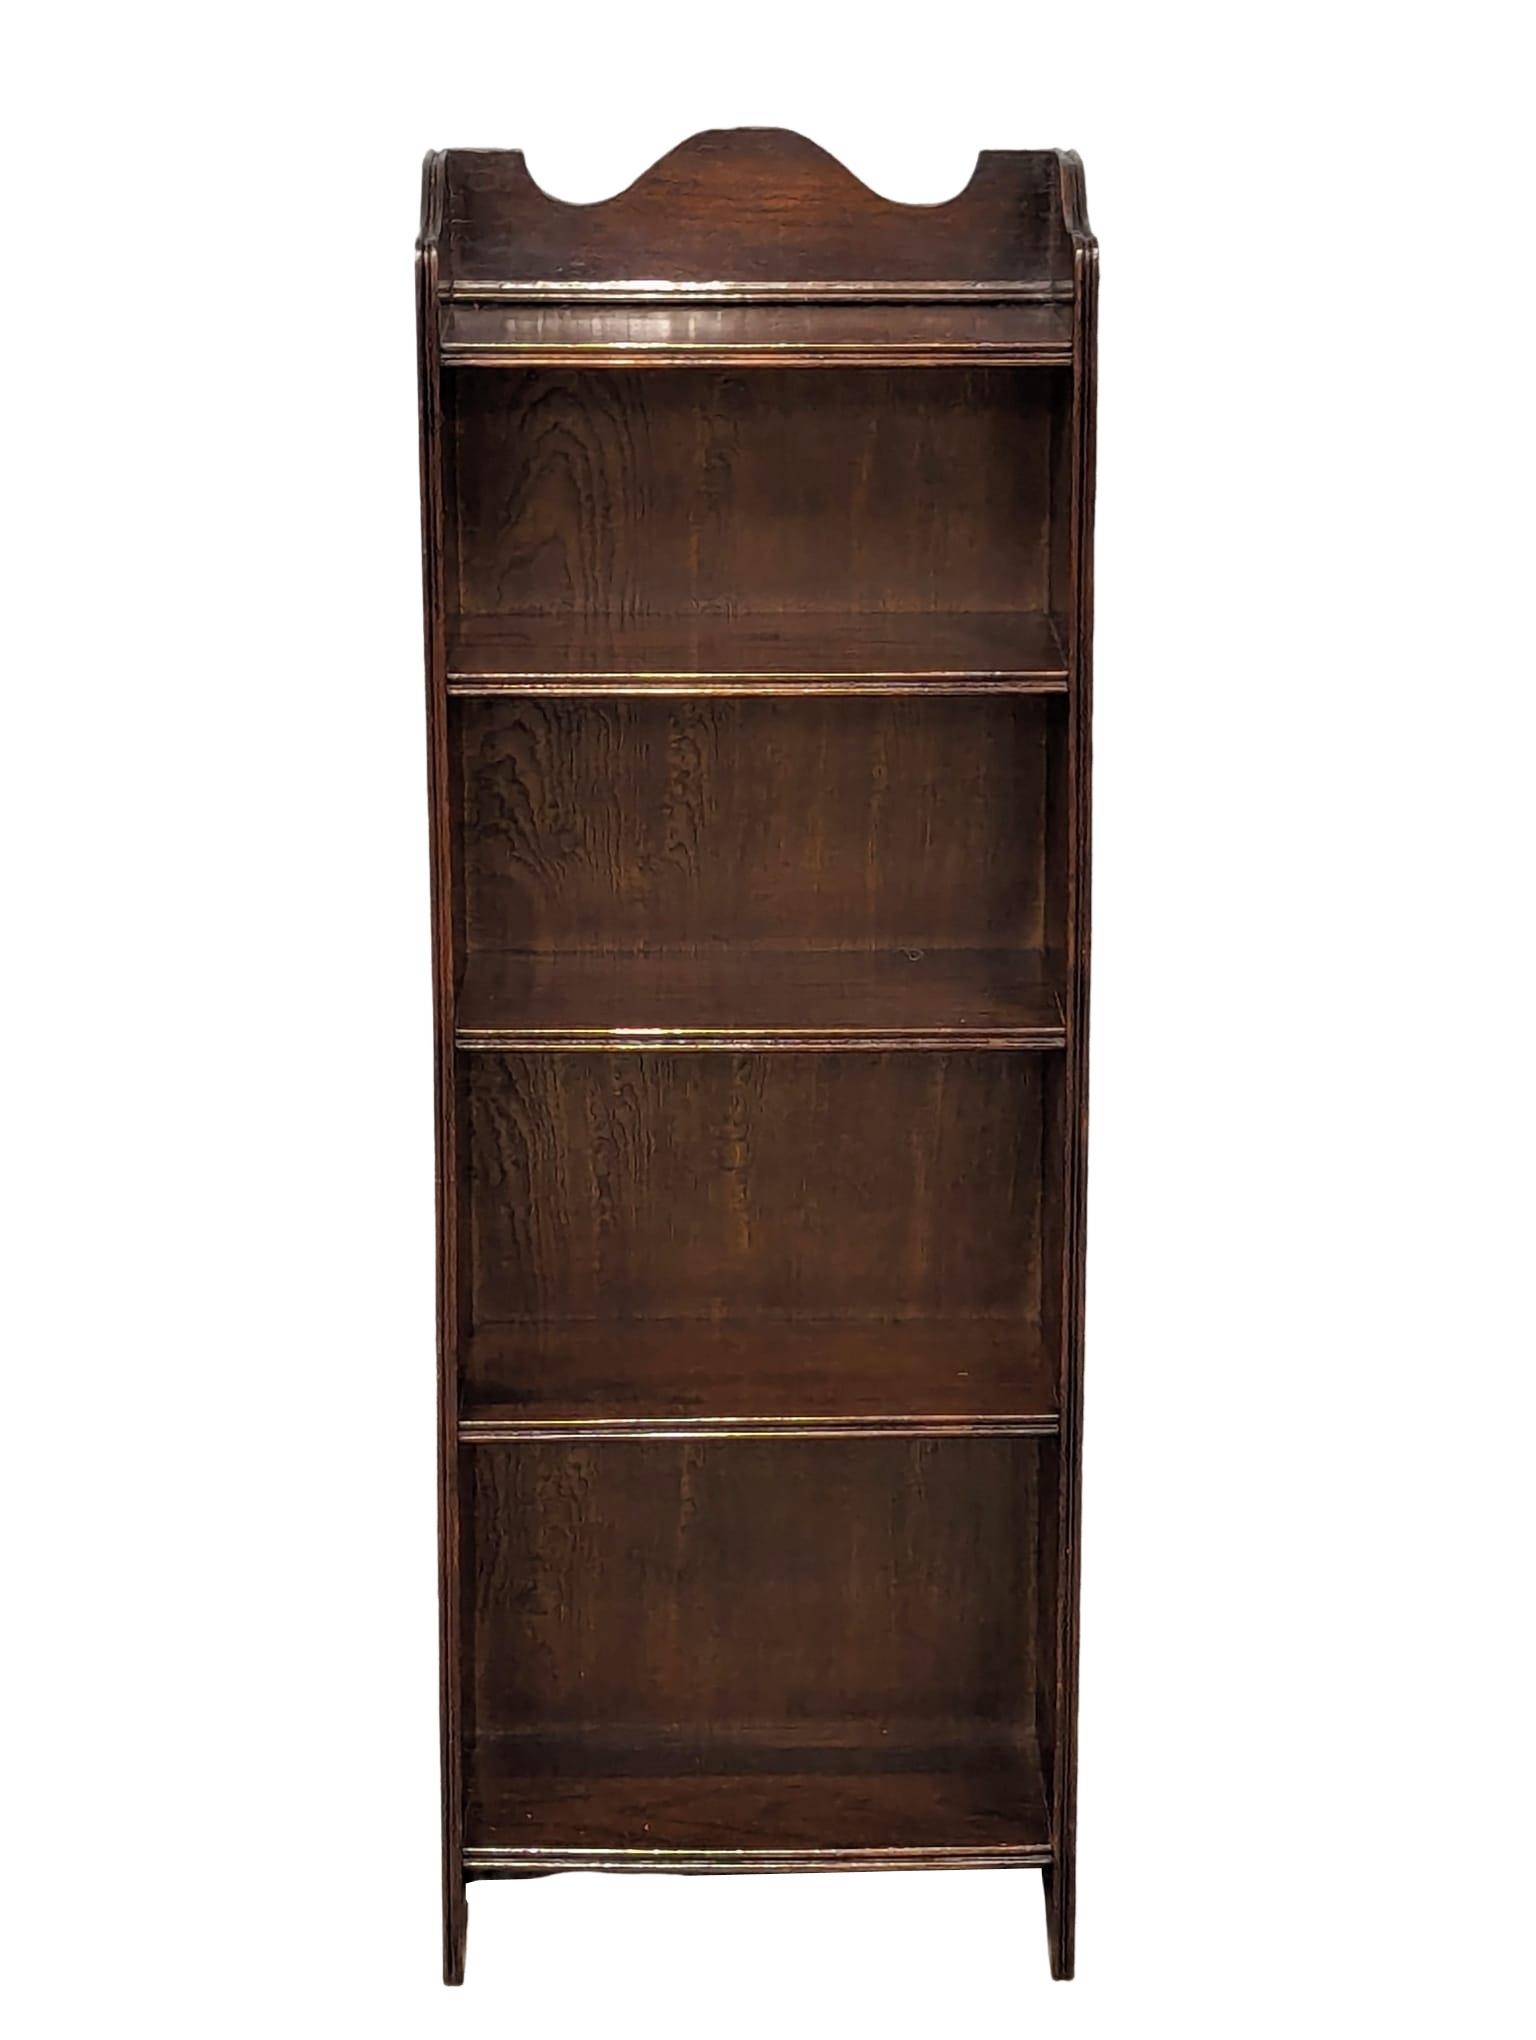 An Early 20th Century oak open bookcase. 38x20x108cm